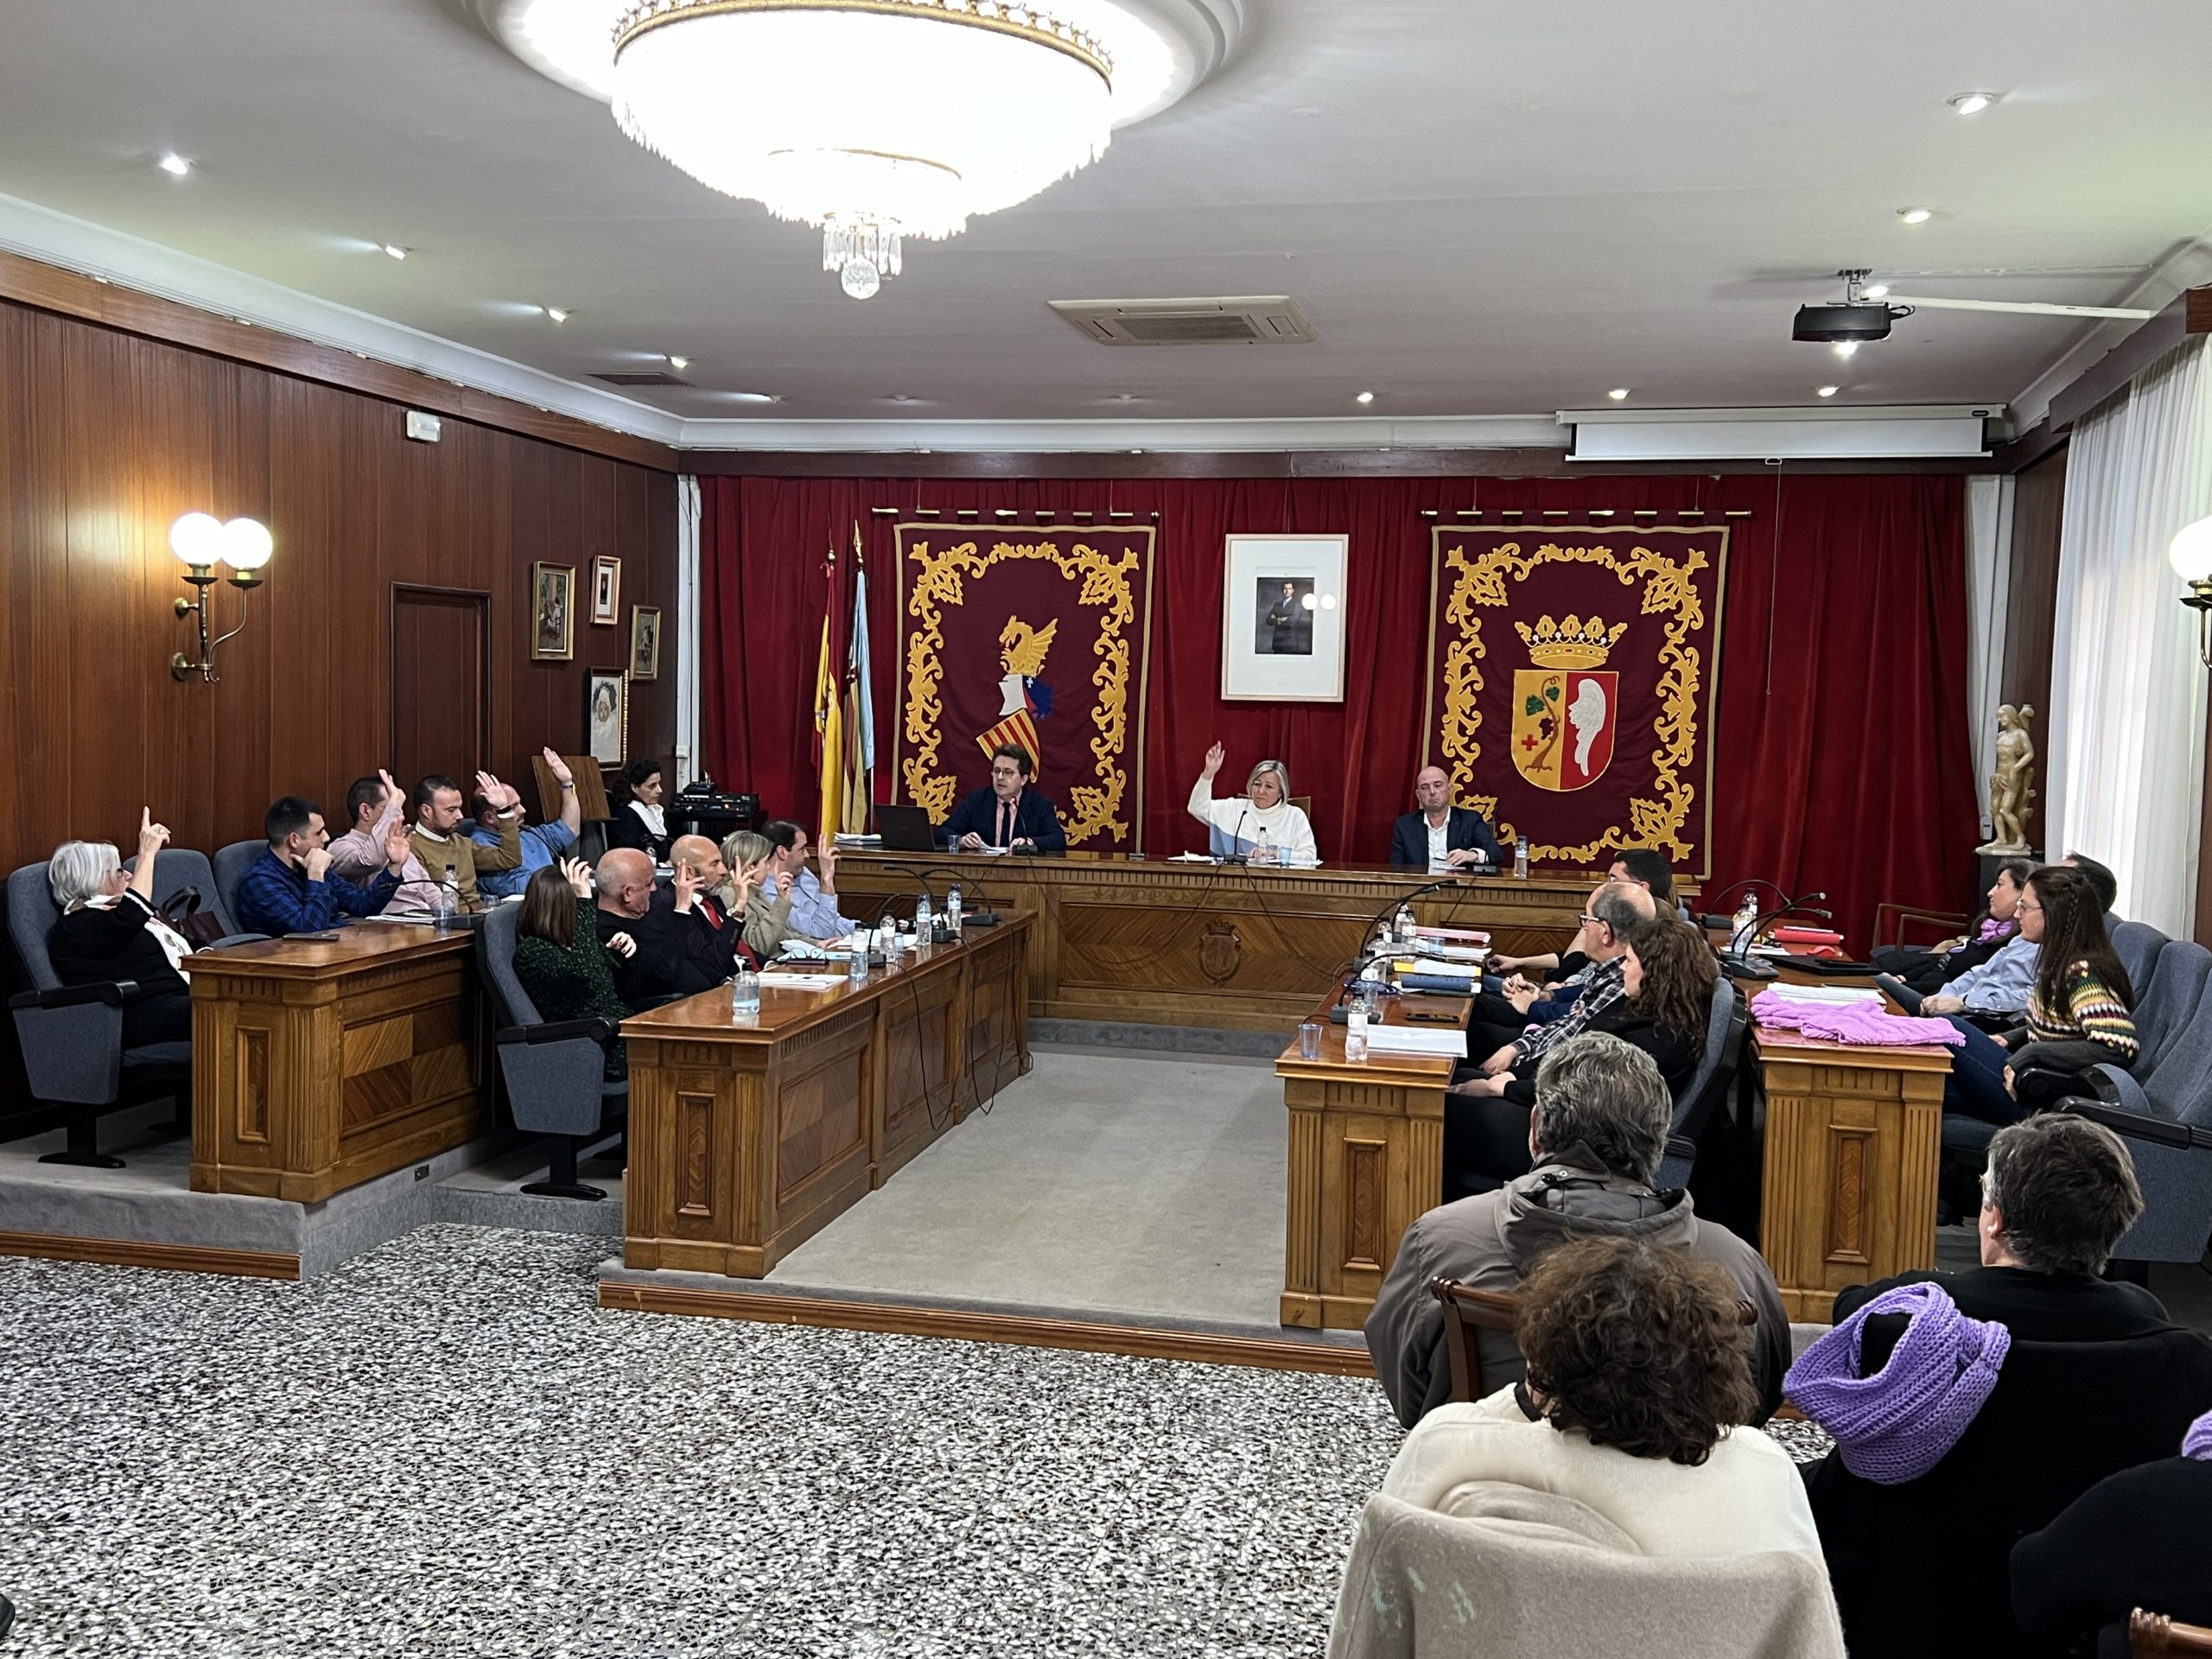 L’Ajuntament de Vinaròs aprova el nou pressupost municipal